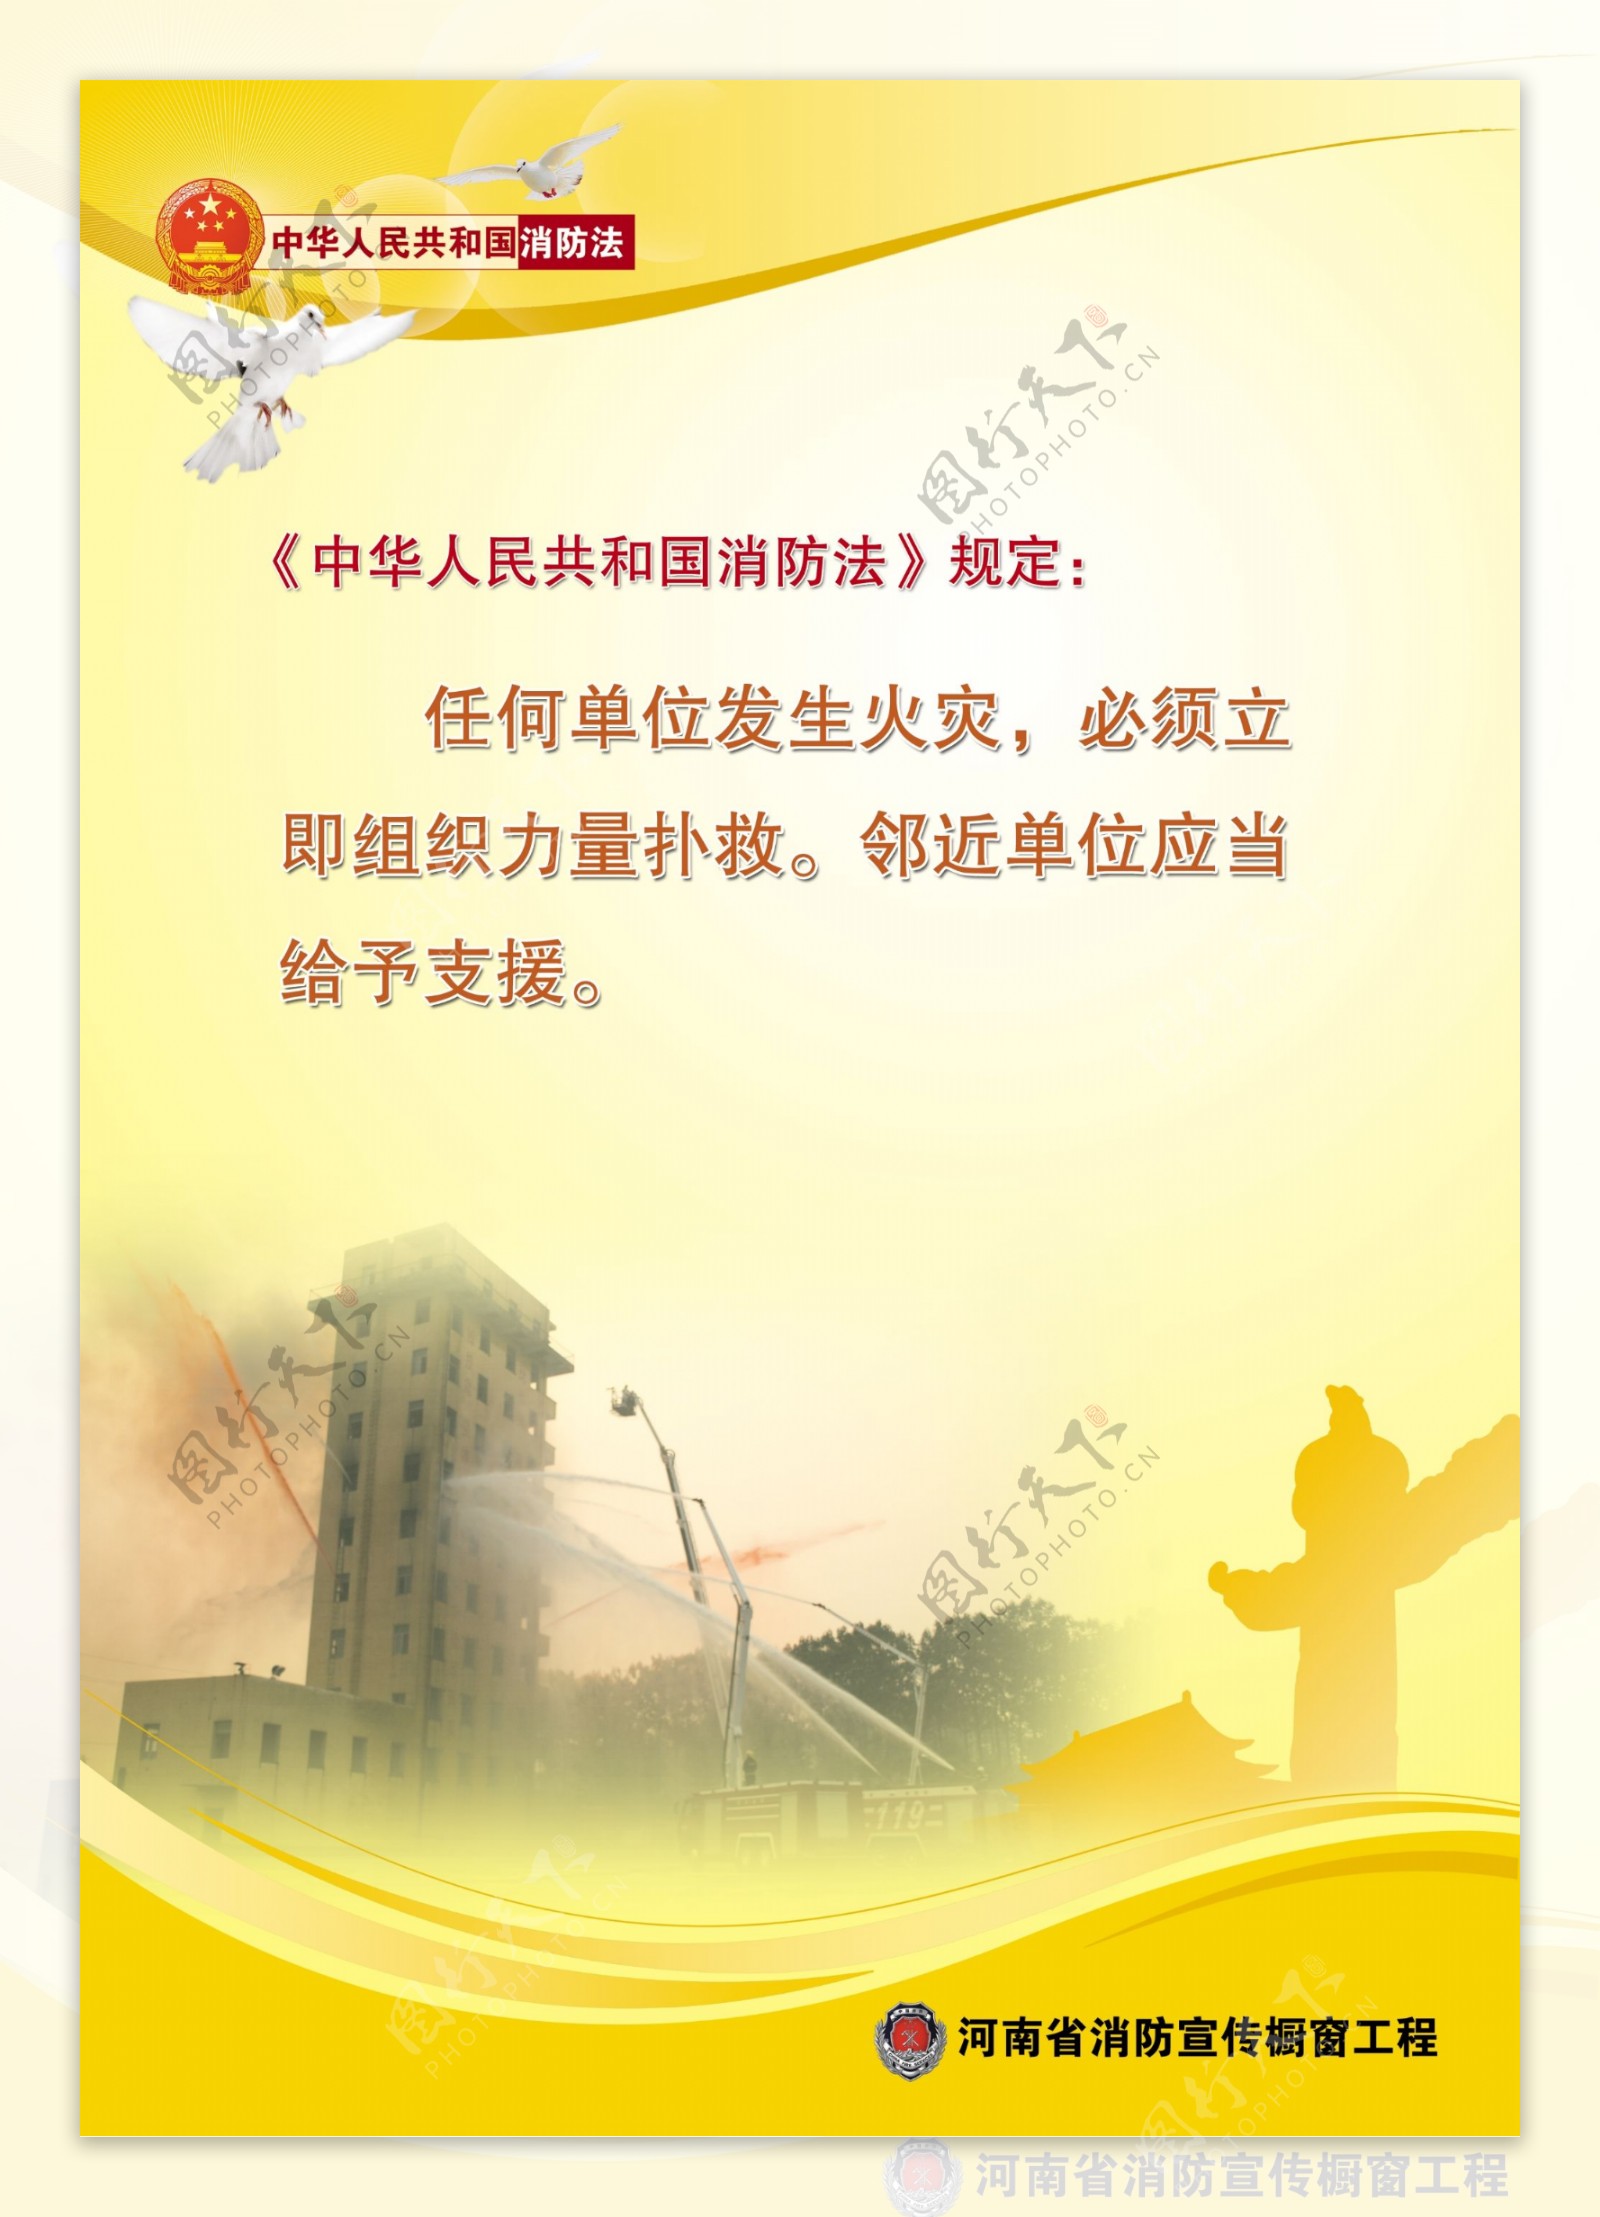 河南消防宣传橱窗工程中国消防法消防宣传竖17图片